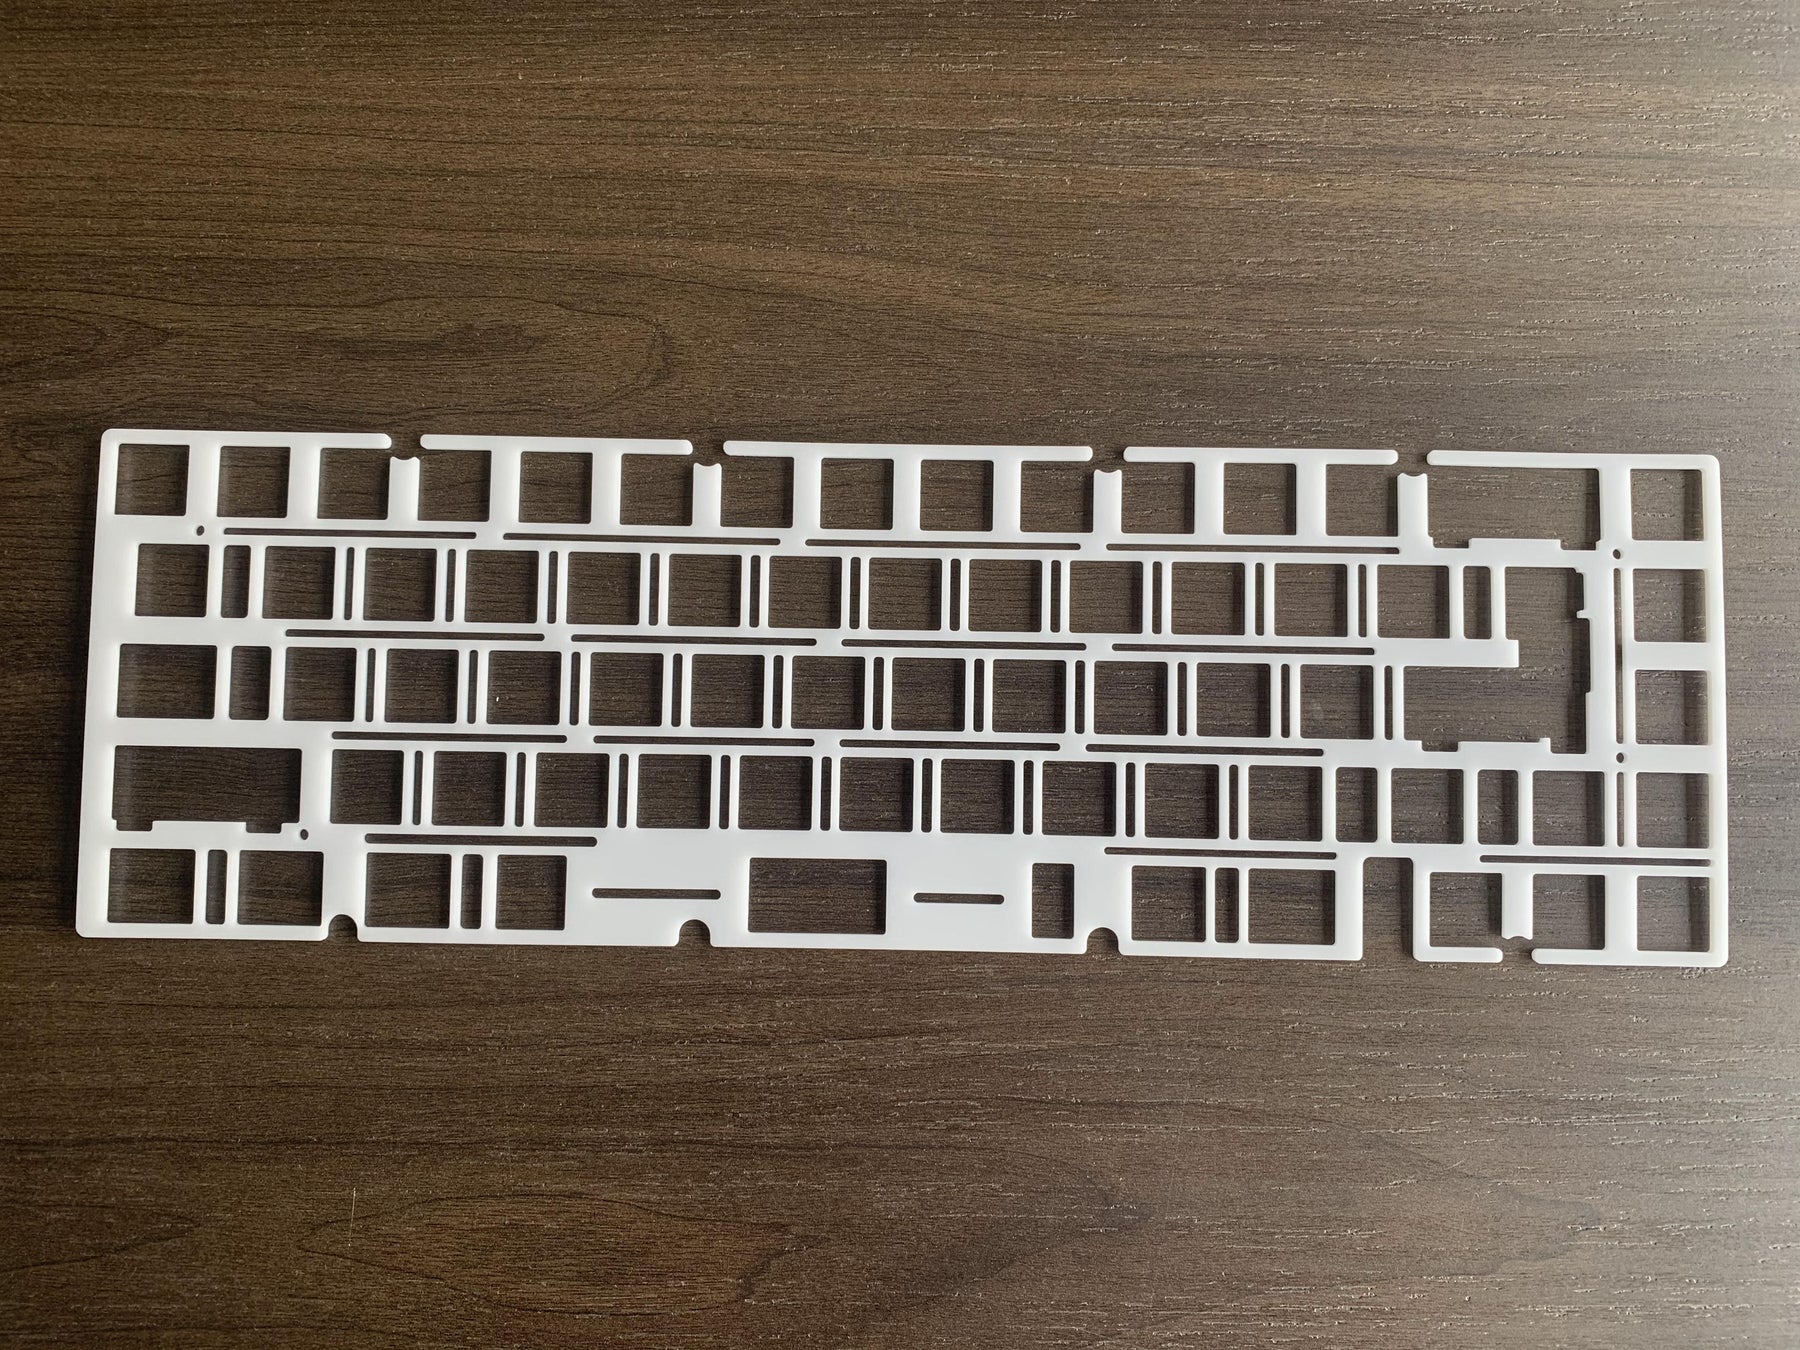 JRIS65 Keyboard Kit - Addons